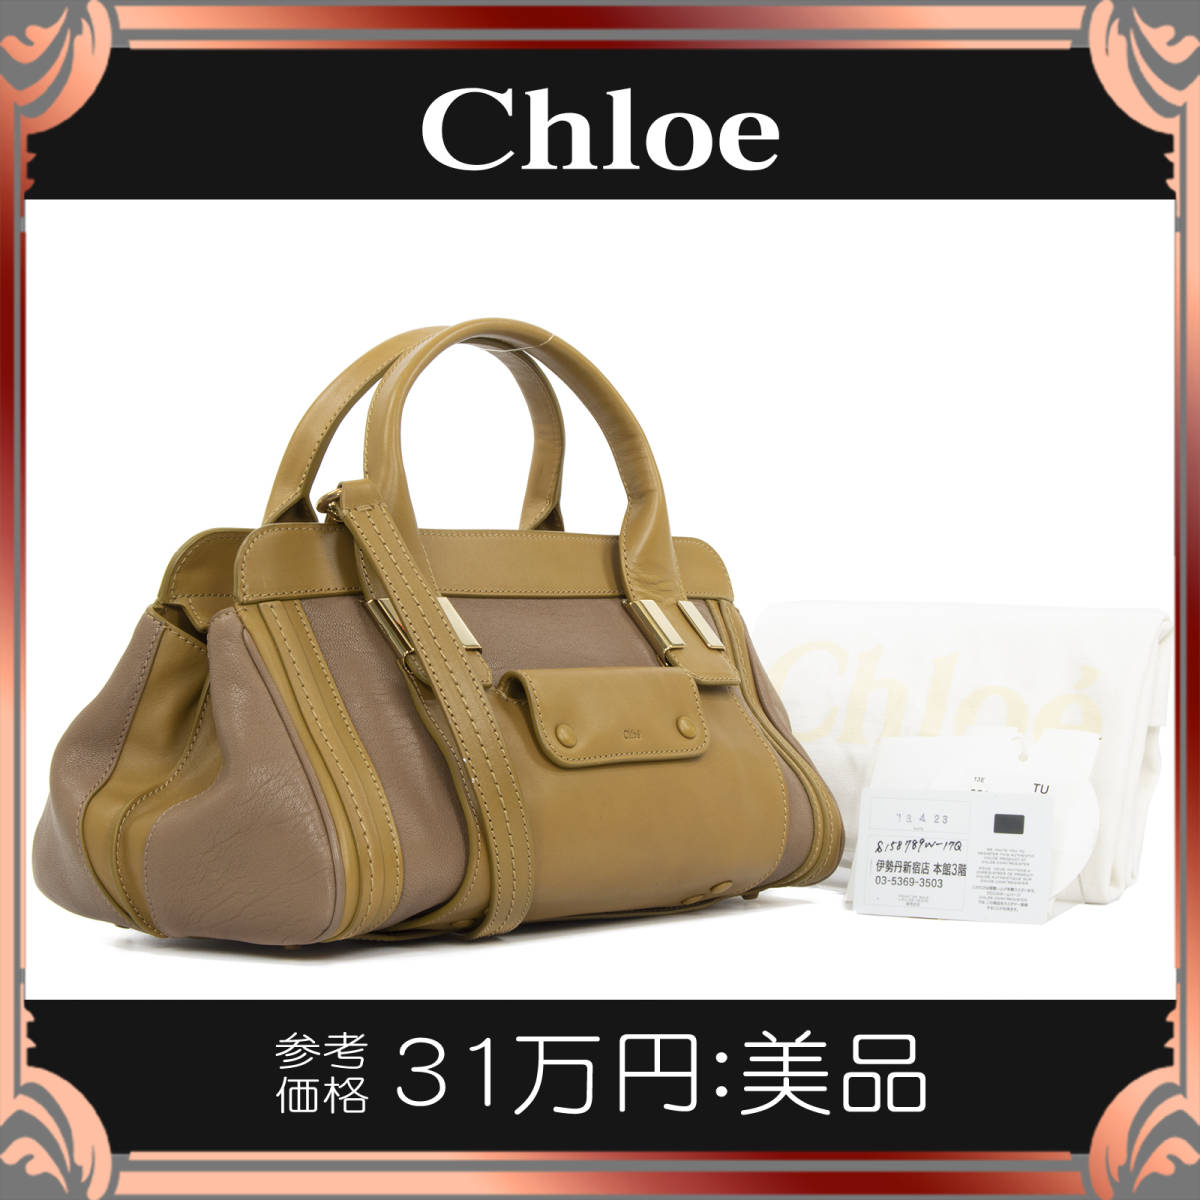 全額返金保証・送料無料】Chloe/クロエの2wayハンドバッグ・正規品